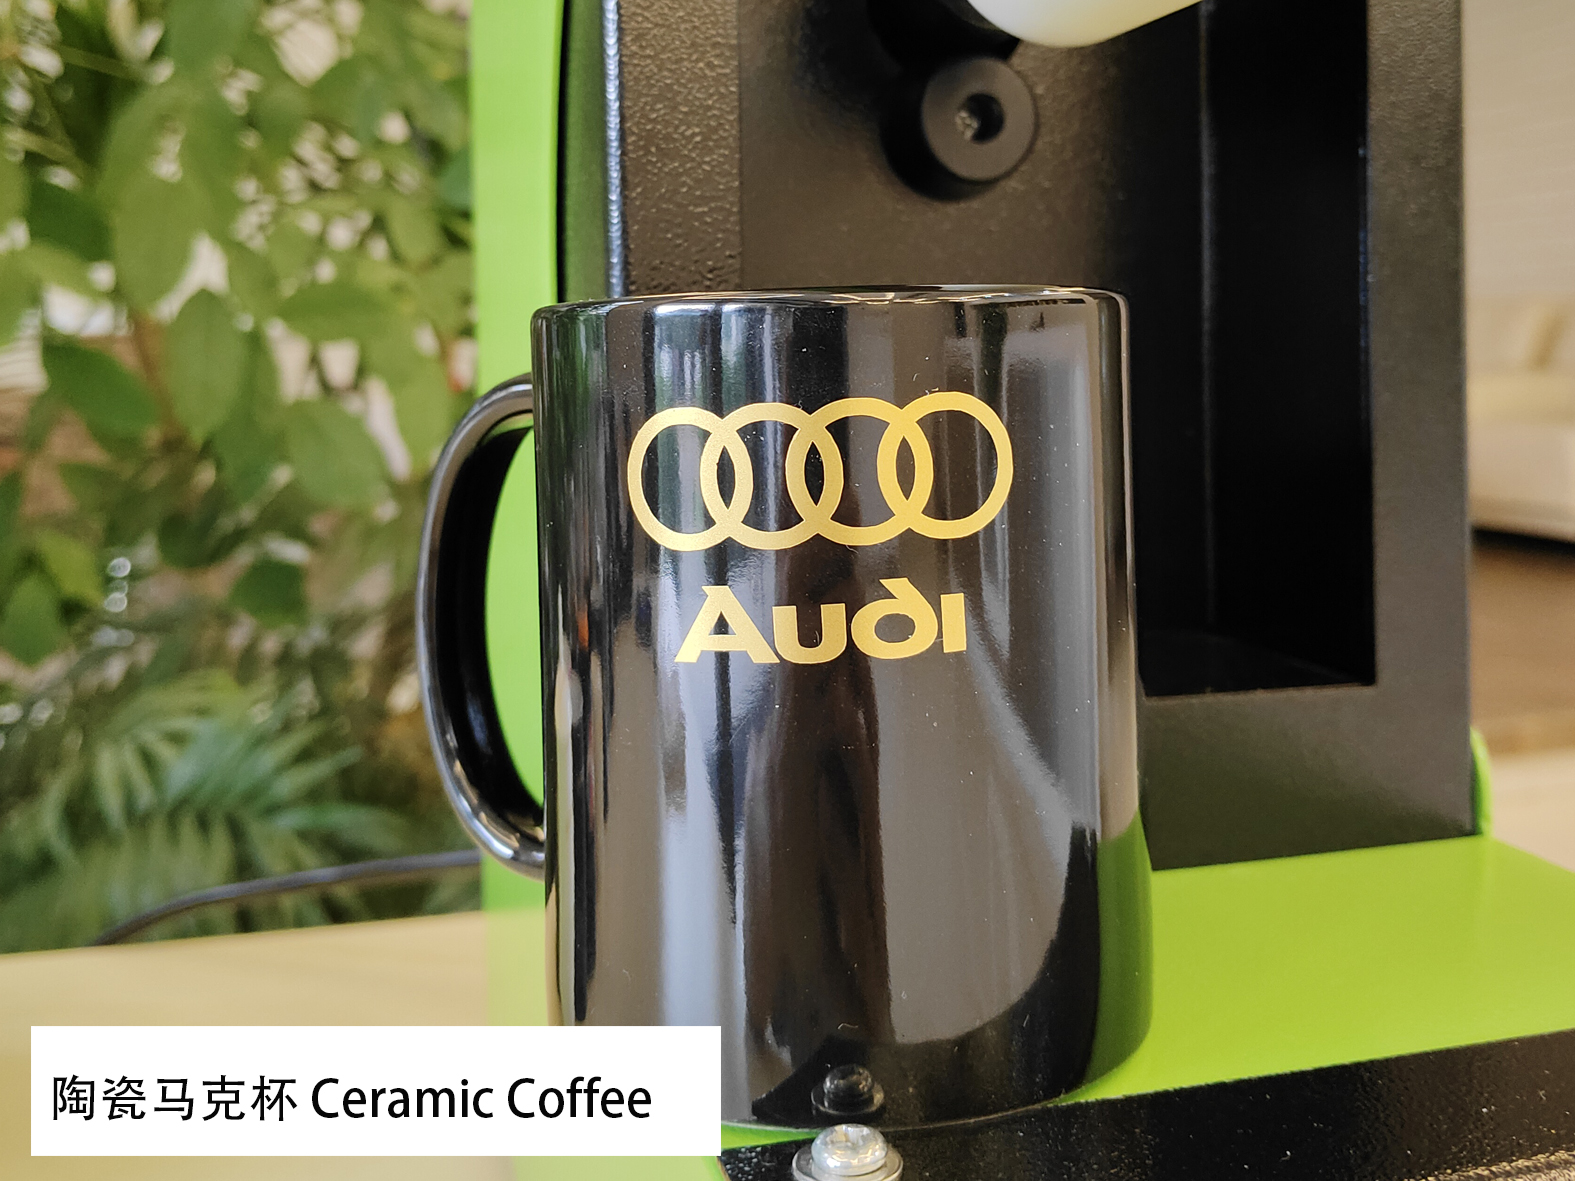 Briljante goue hitte-oordragplakkers foelie (HSF-GD811) vir keramiekkoffie van Audi-logo